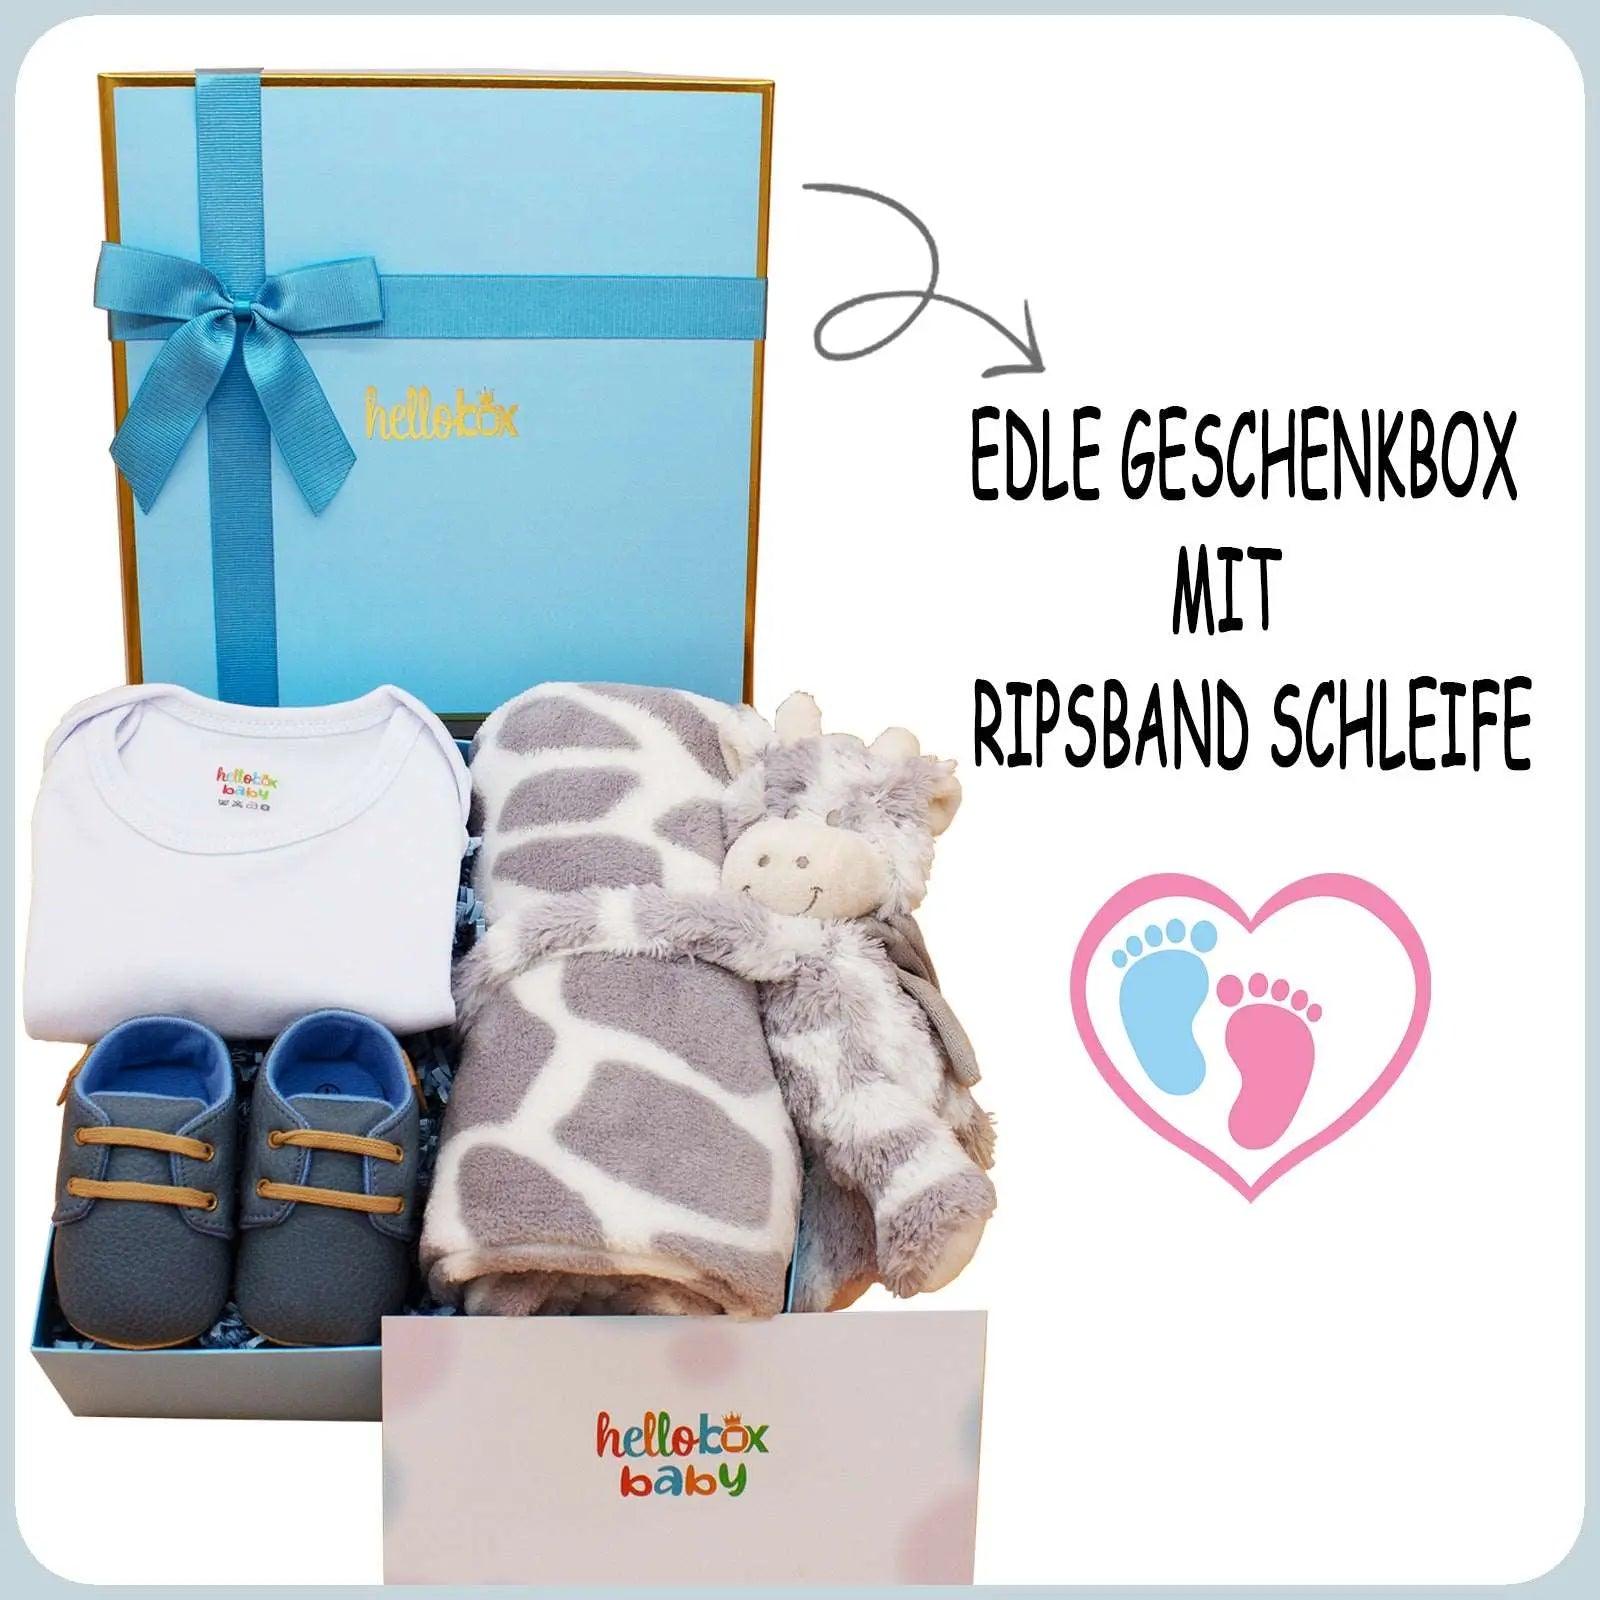 Hellobox Geschenk für neugeborene Blue Junge helloboxshop